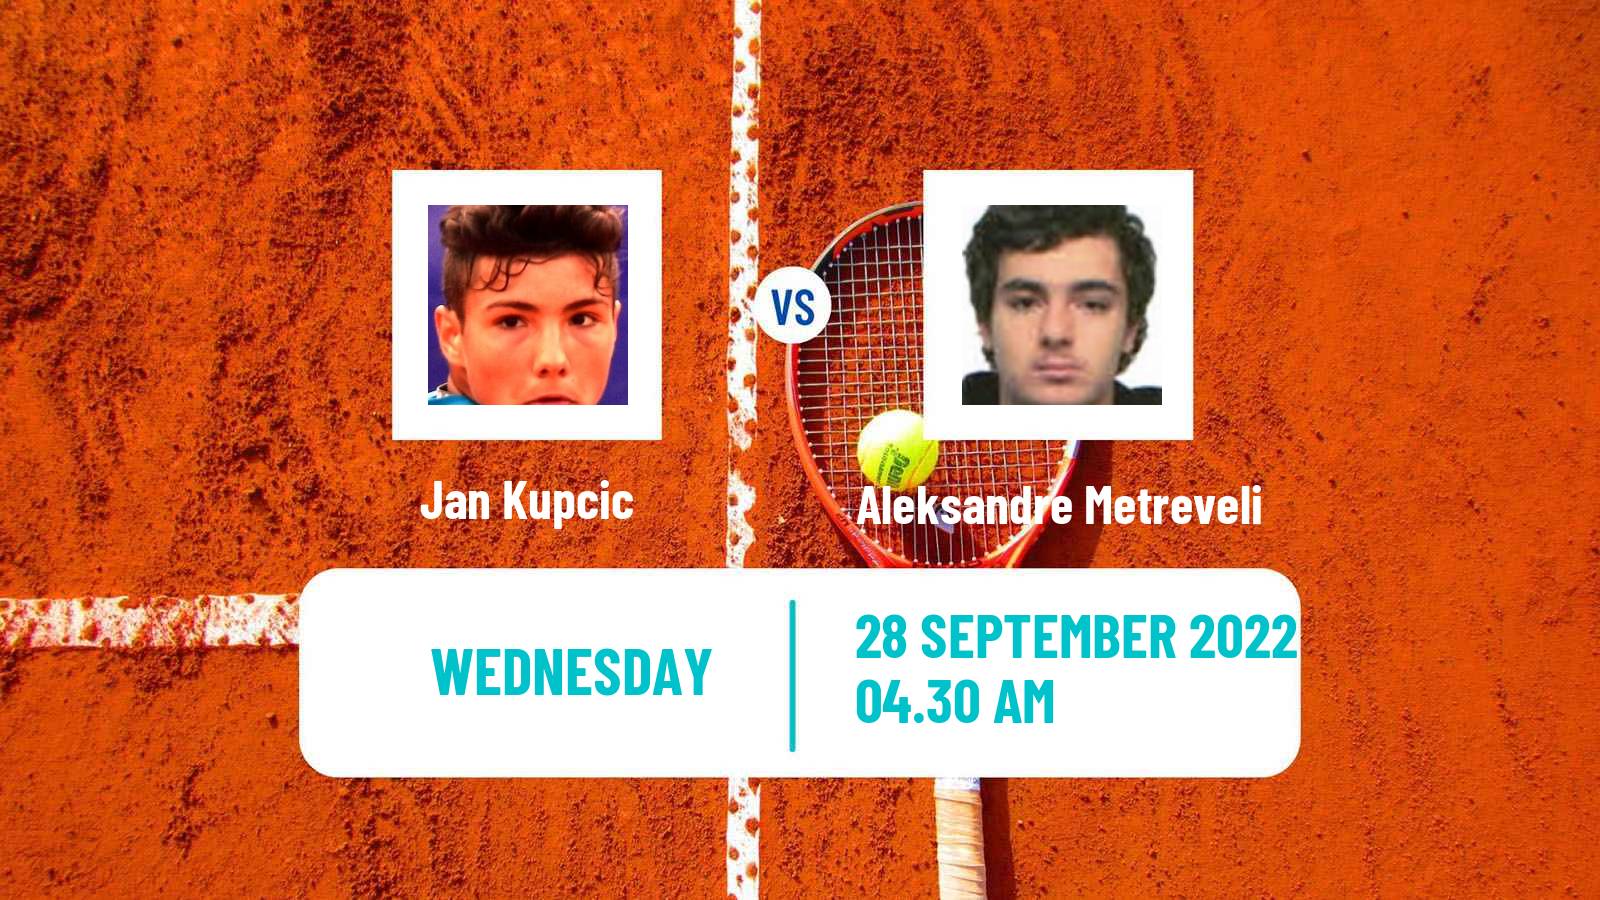 Tennis ITF Tournaments Jan Kupcic - Aleksandre Metreveli